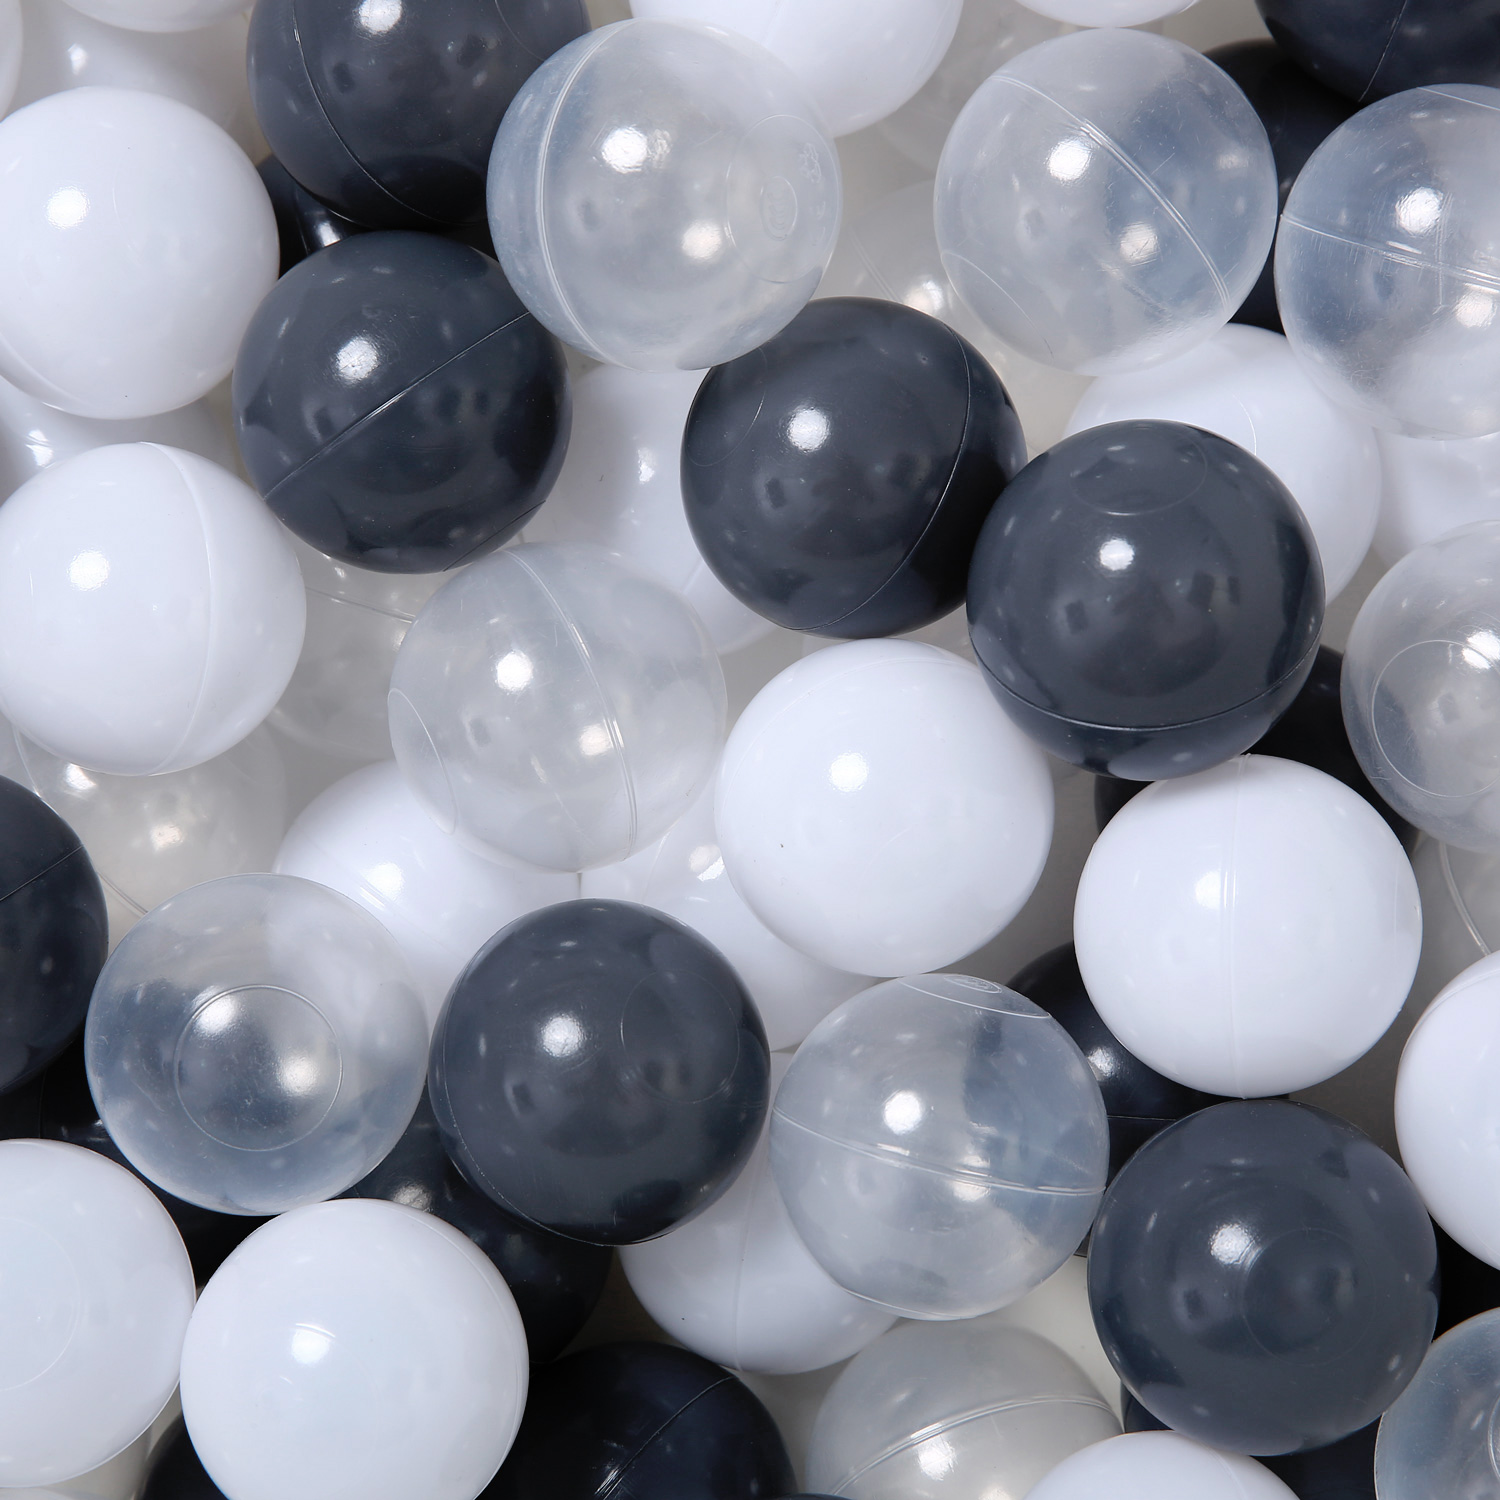 Balles en plastiques noires, blanches et transparentes